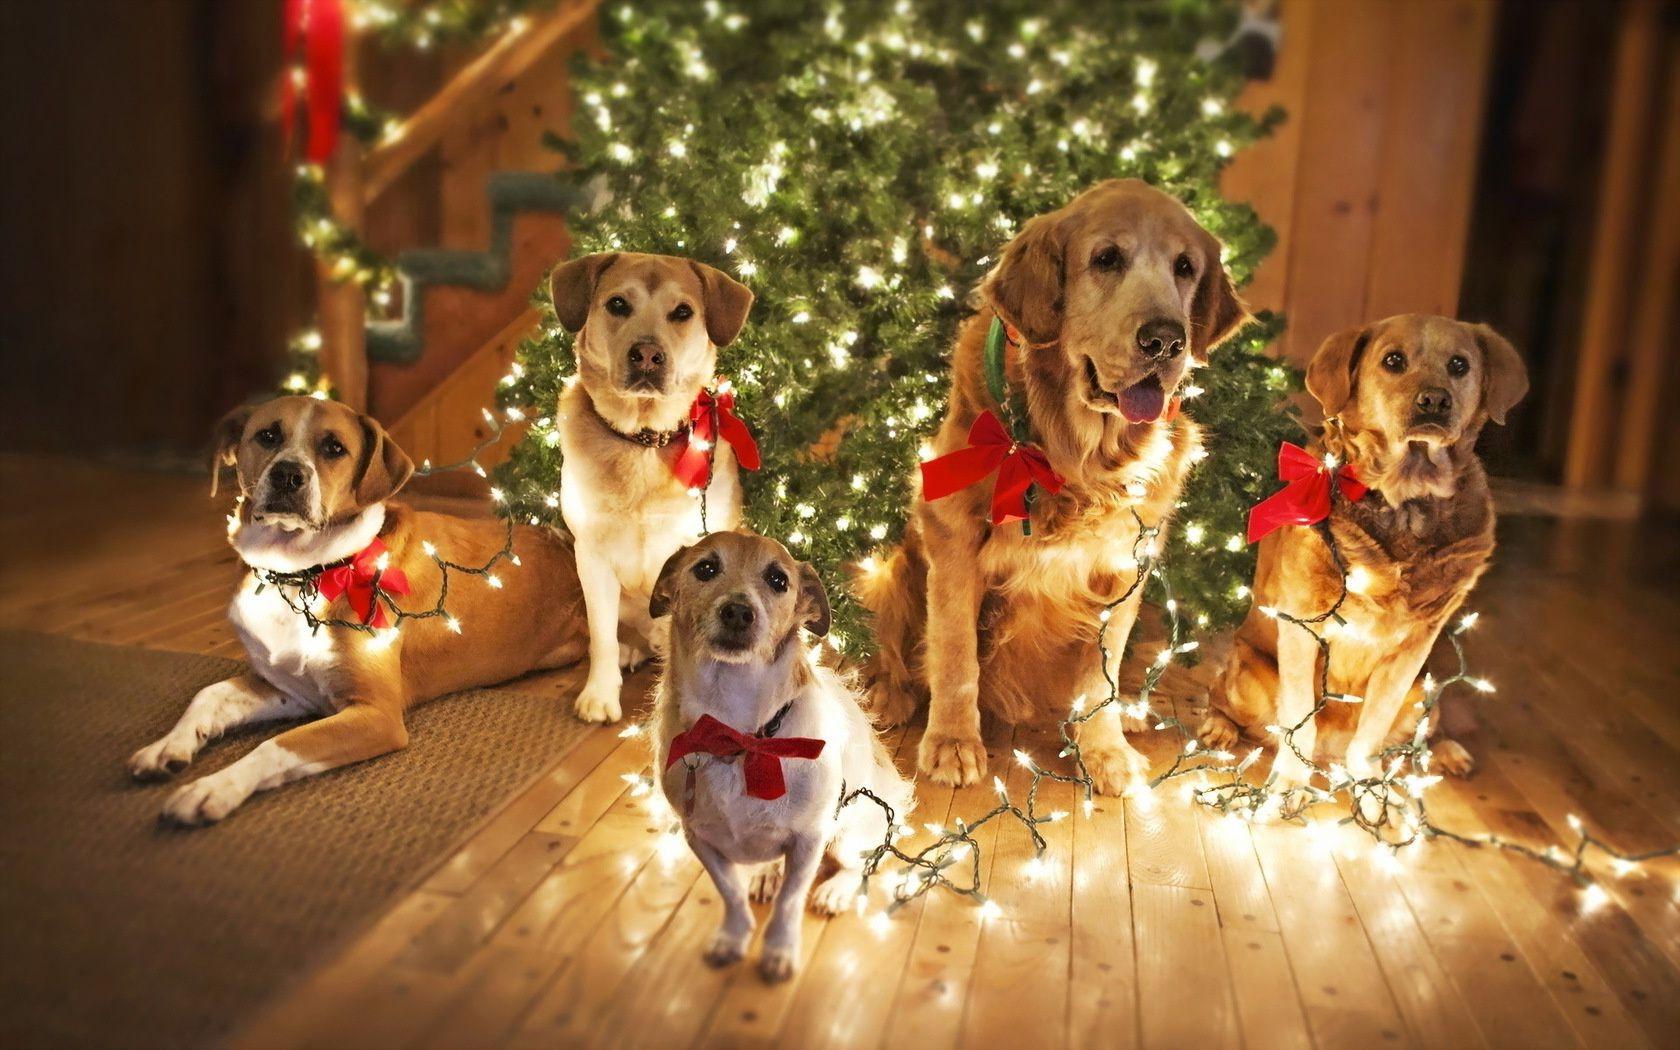 Dog Christmas tree holiday